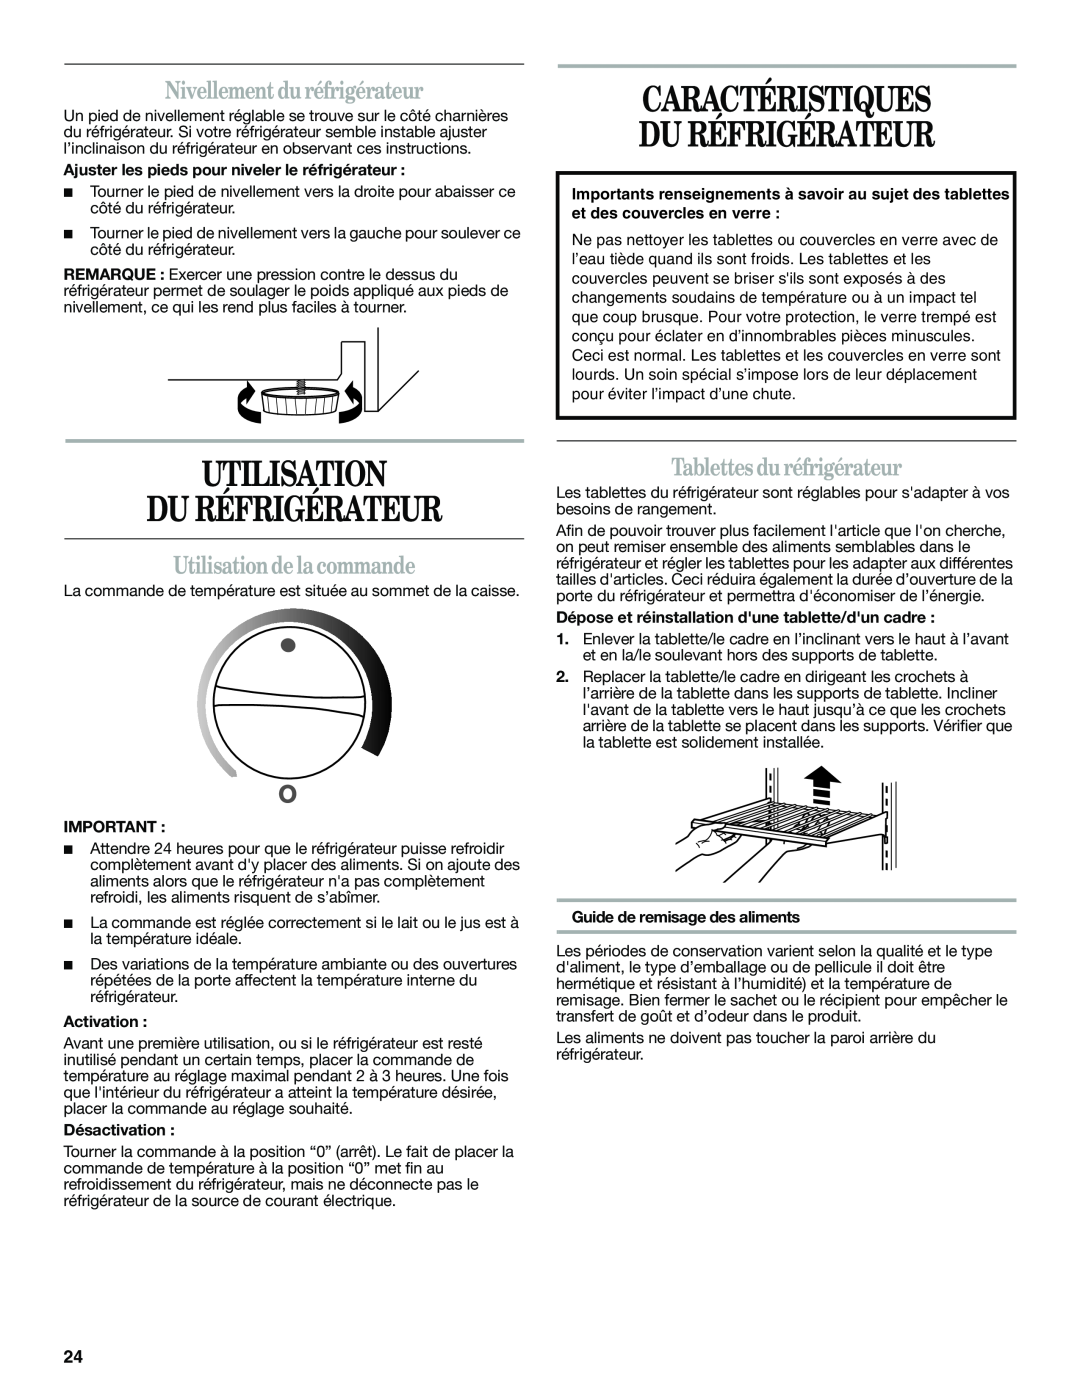 Whirlpool WAR488BSL manual Caractéristiques Du Réfrigérateur, Utilisation Du Réfrigérateur, Nivellement duréfrigérateur 